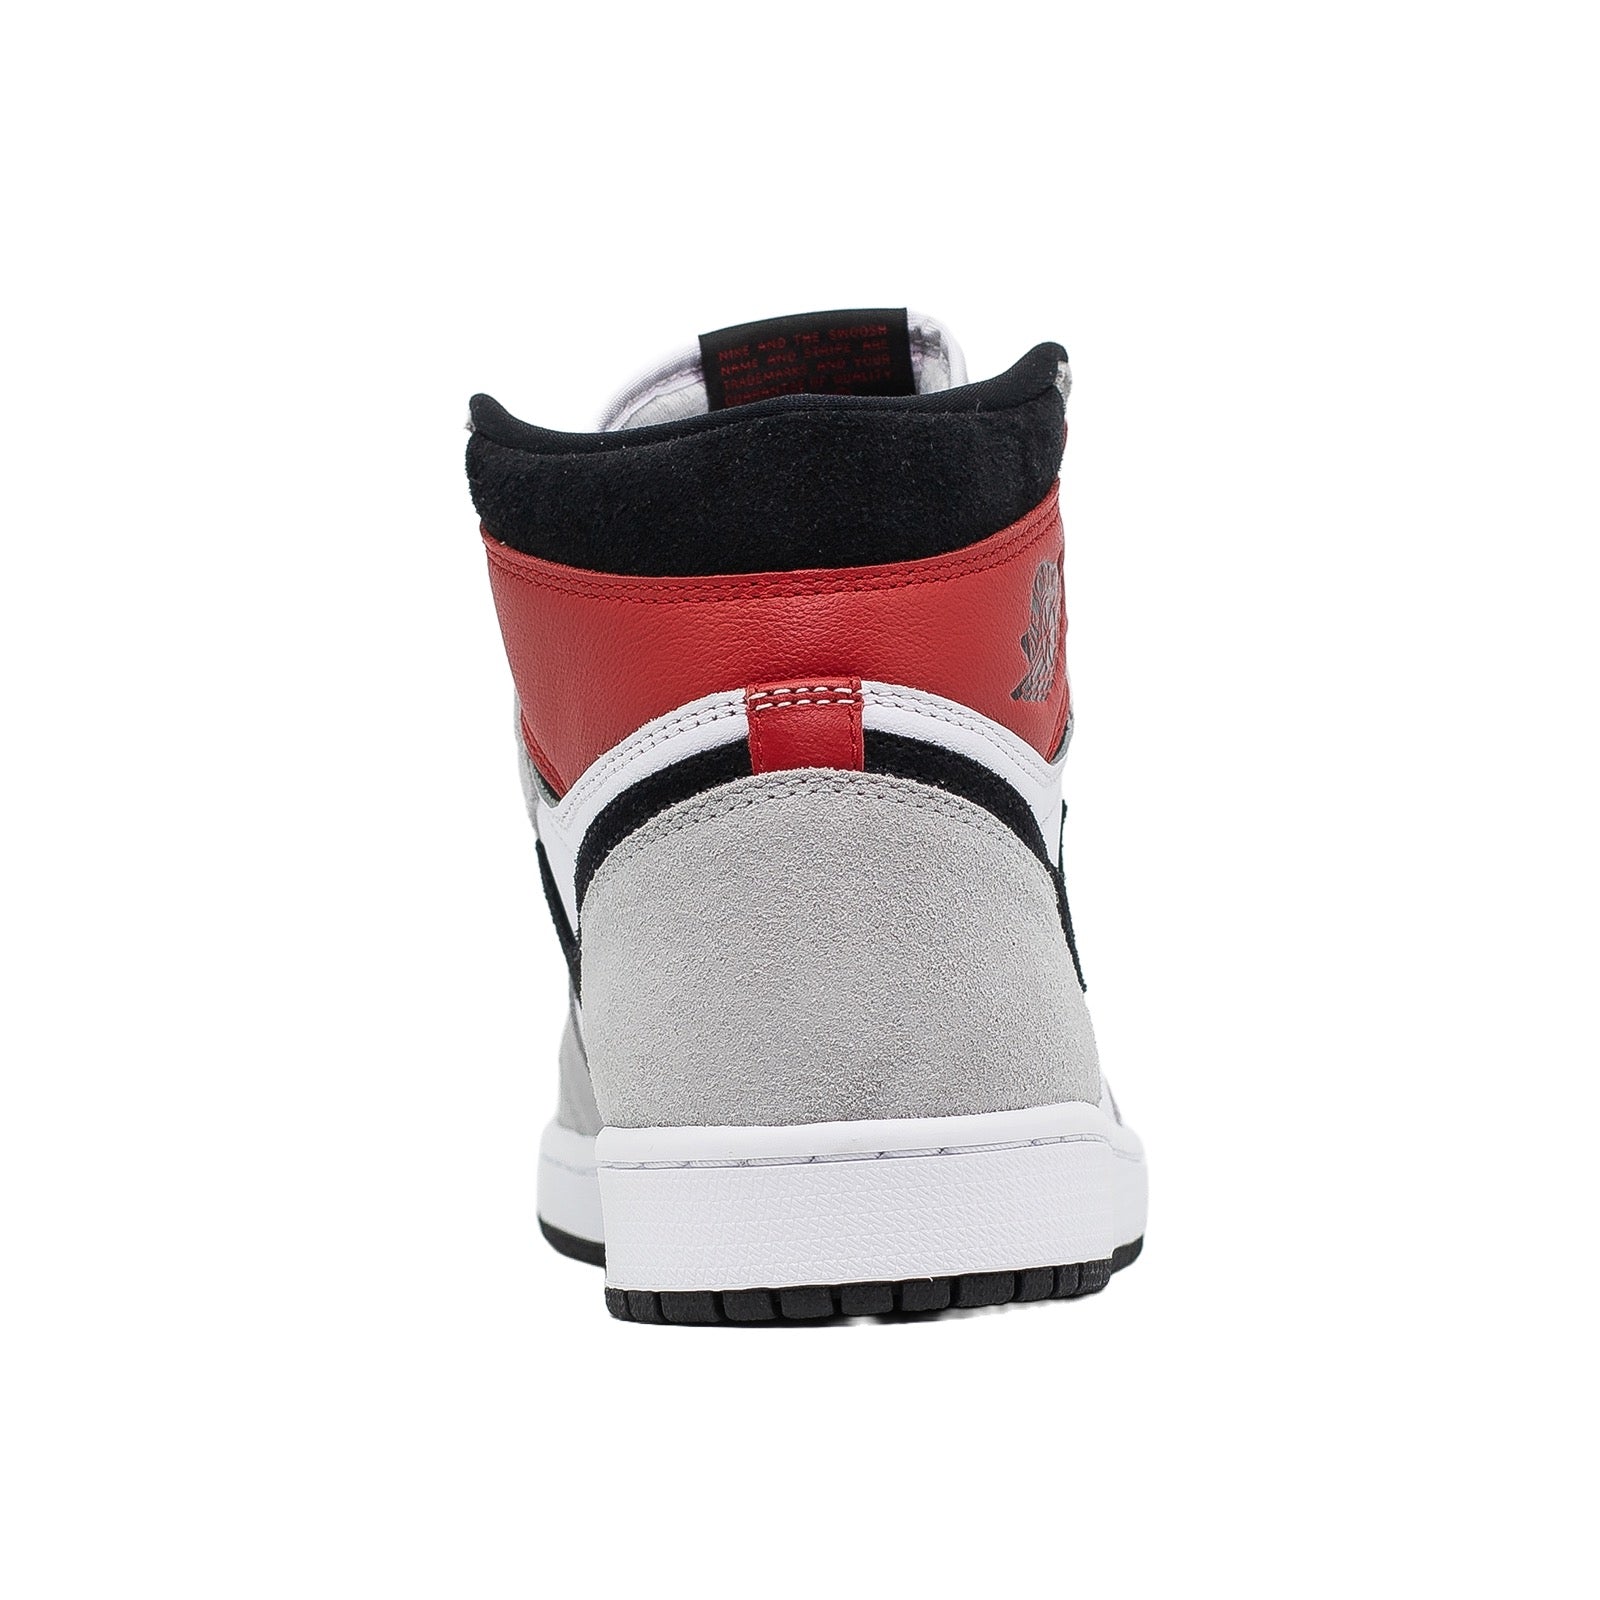 Las Mejores Zapatillas Black-Stealth jordan para Niño que vas a encontrar en la red High, Smoke Grey